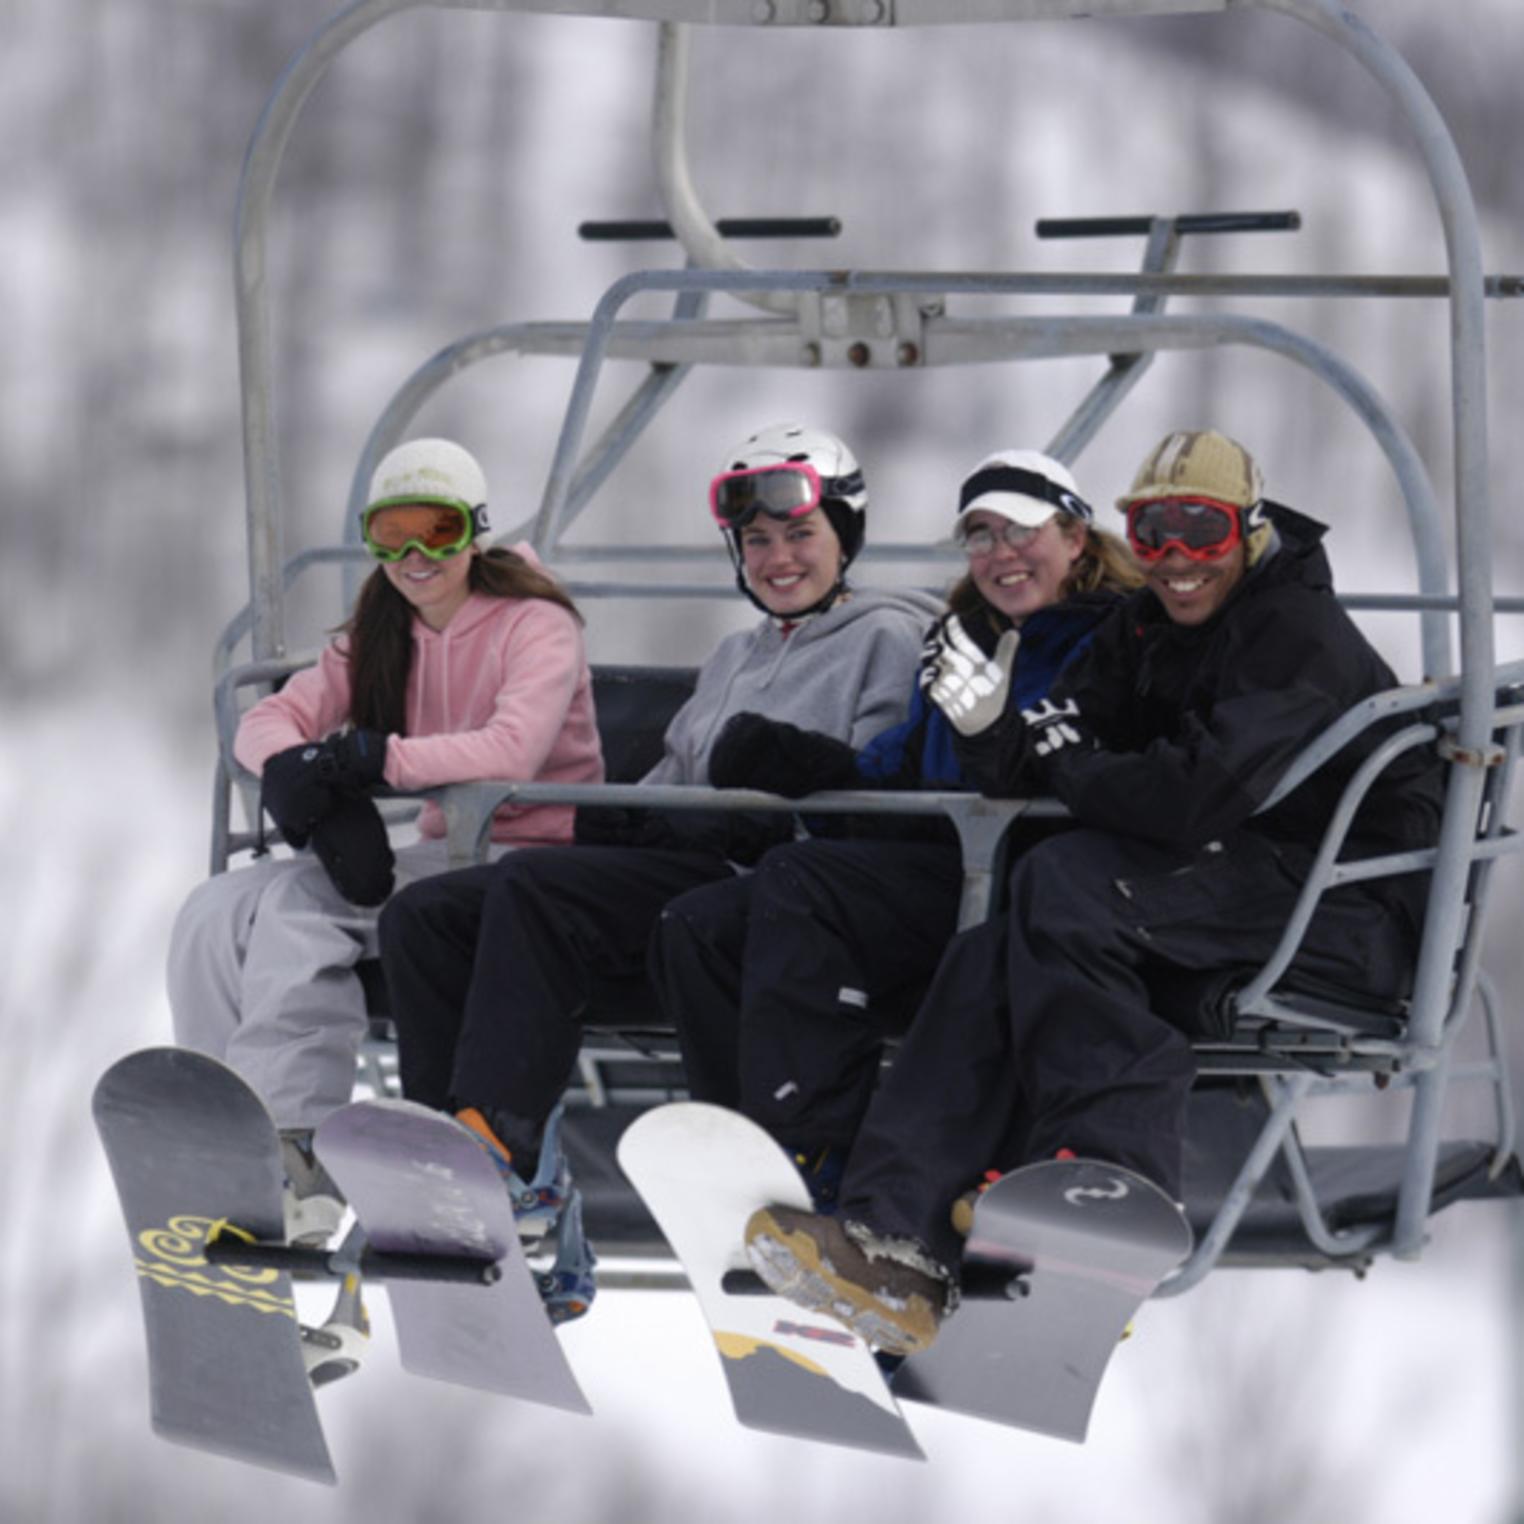 Ski Lift at Roundtop Mountain Resort